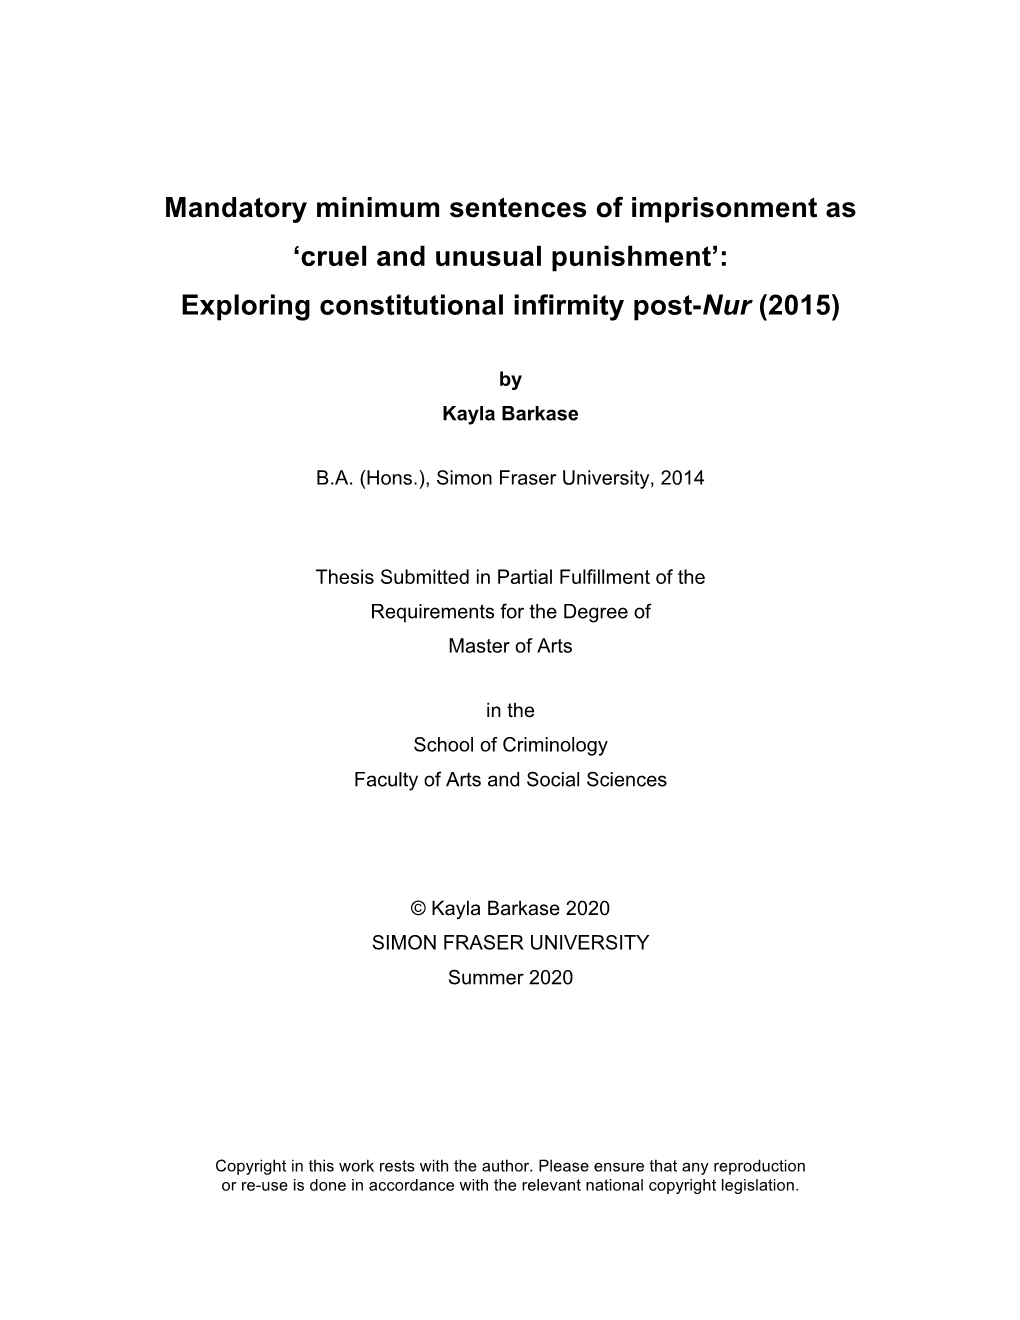 Mandatory Minimum Sentences of Imprisonment As 'Cruel and Unusual Punishment': Exploring Constitutional Infirmity Post-Nur